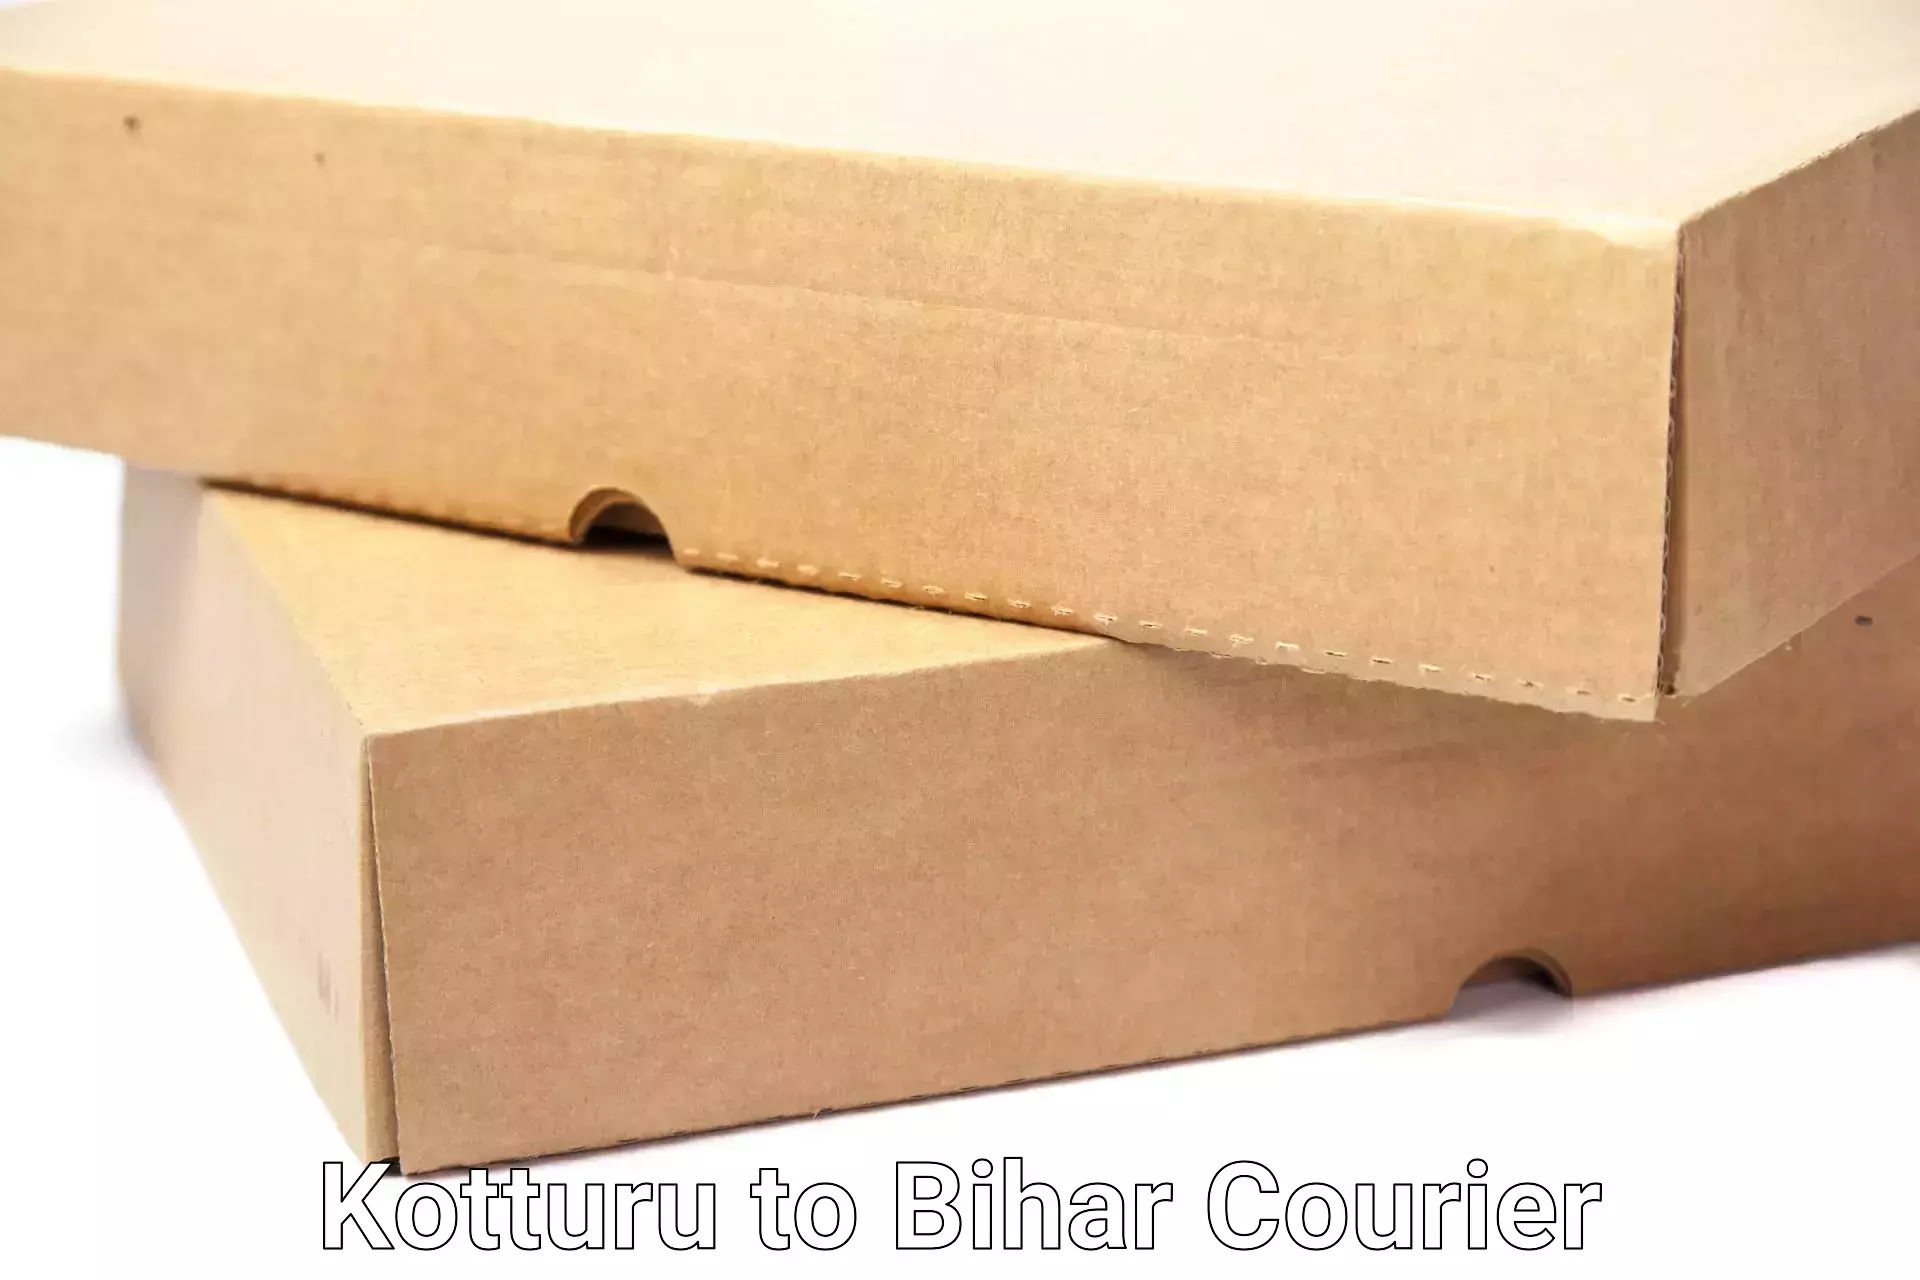 Furniture moving assistance Kotturu to Sheohar